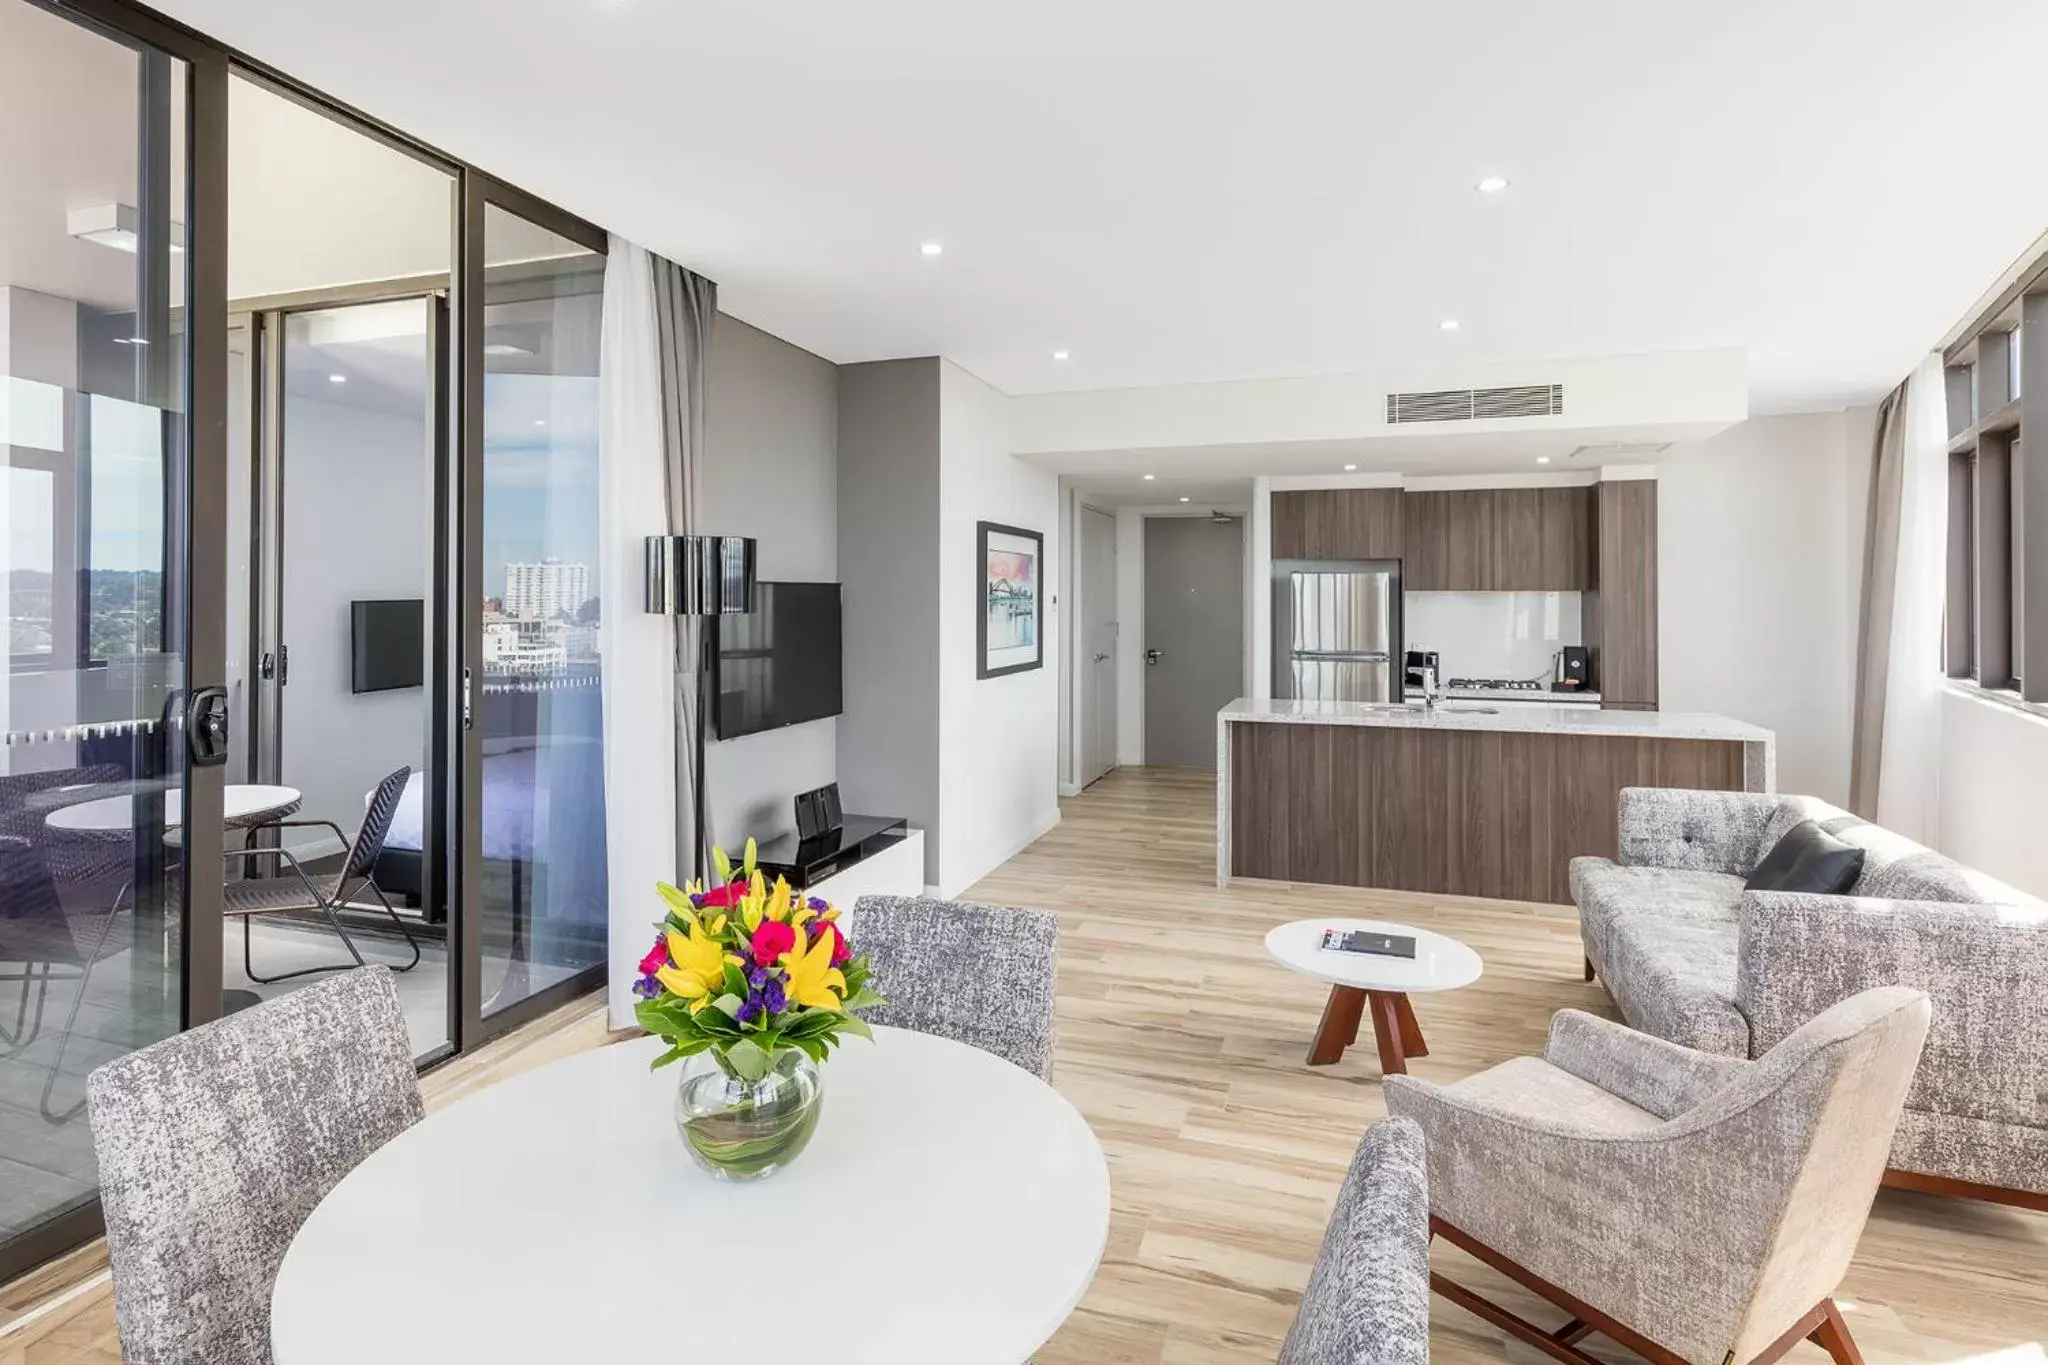 TV and multimedia, Seating Area in Meriton Suites Church Street, Parramatta